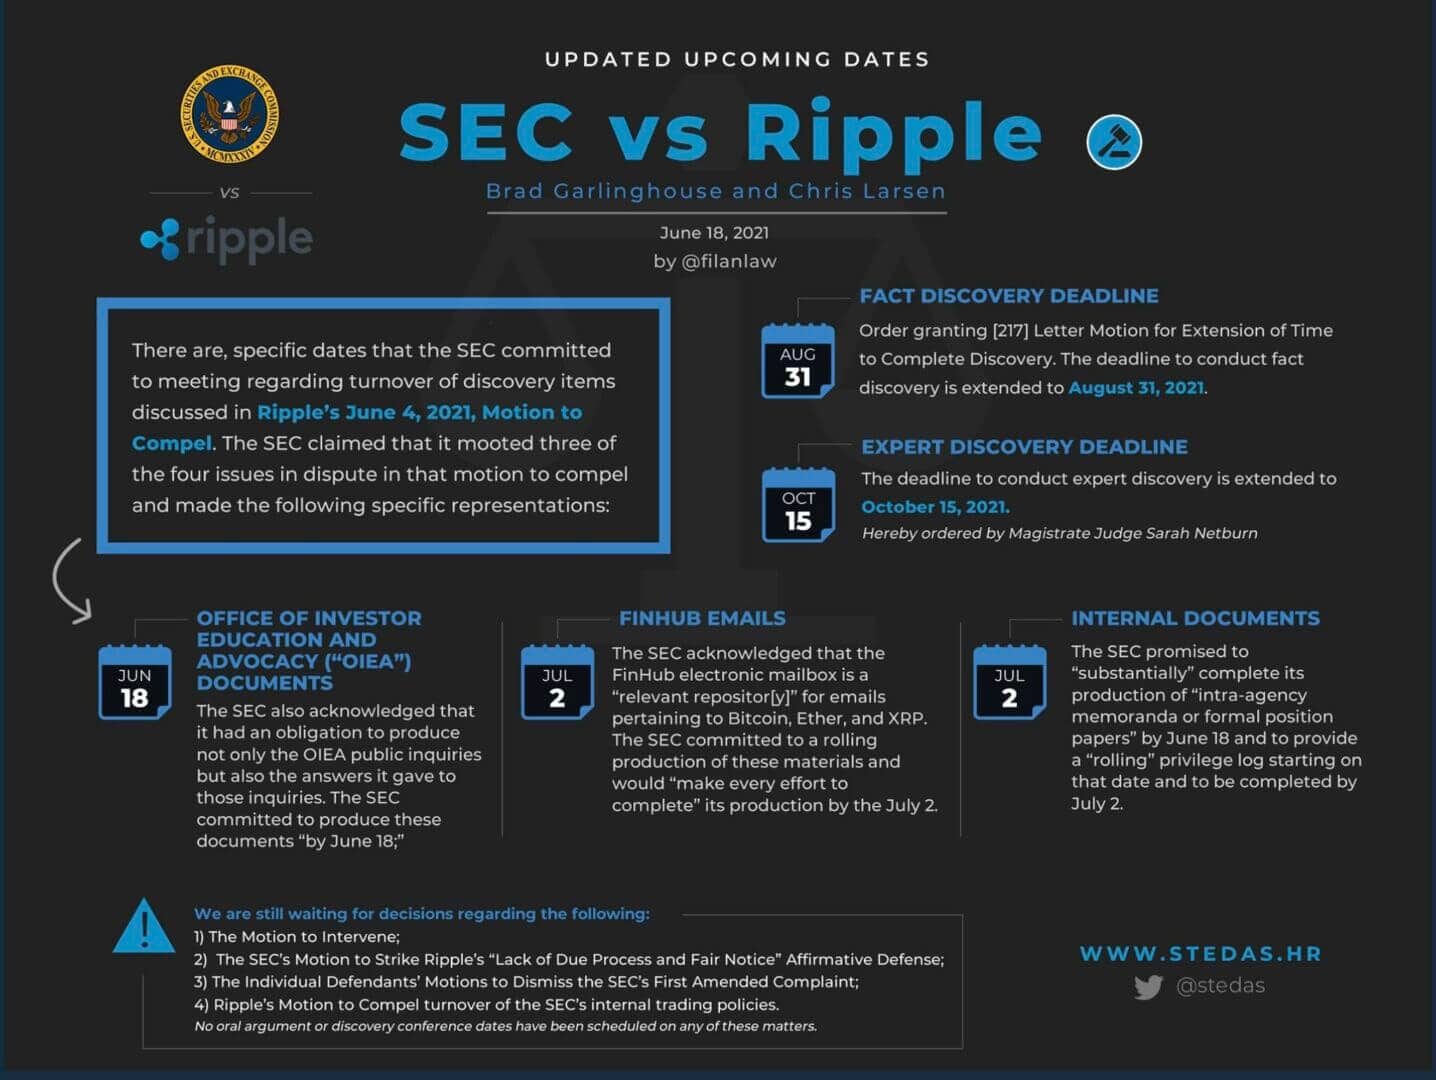 Étapes clés à venir de l'affaire Ripple vs SEC dont la phase de découverte des fait a été entendue jusqu'à août 2021.